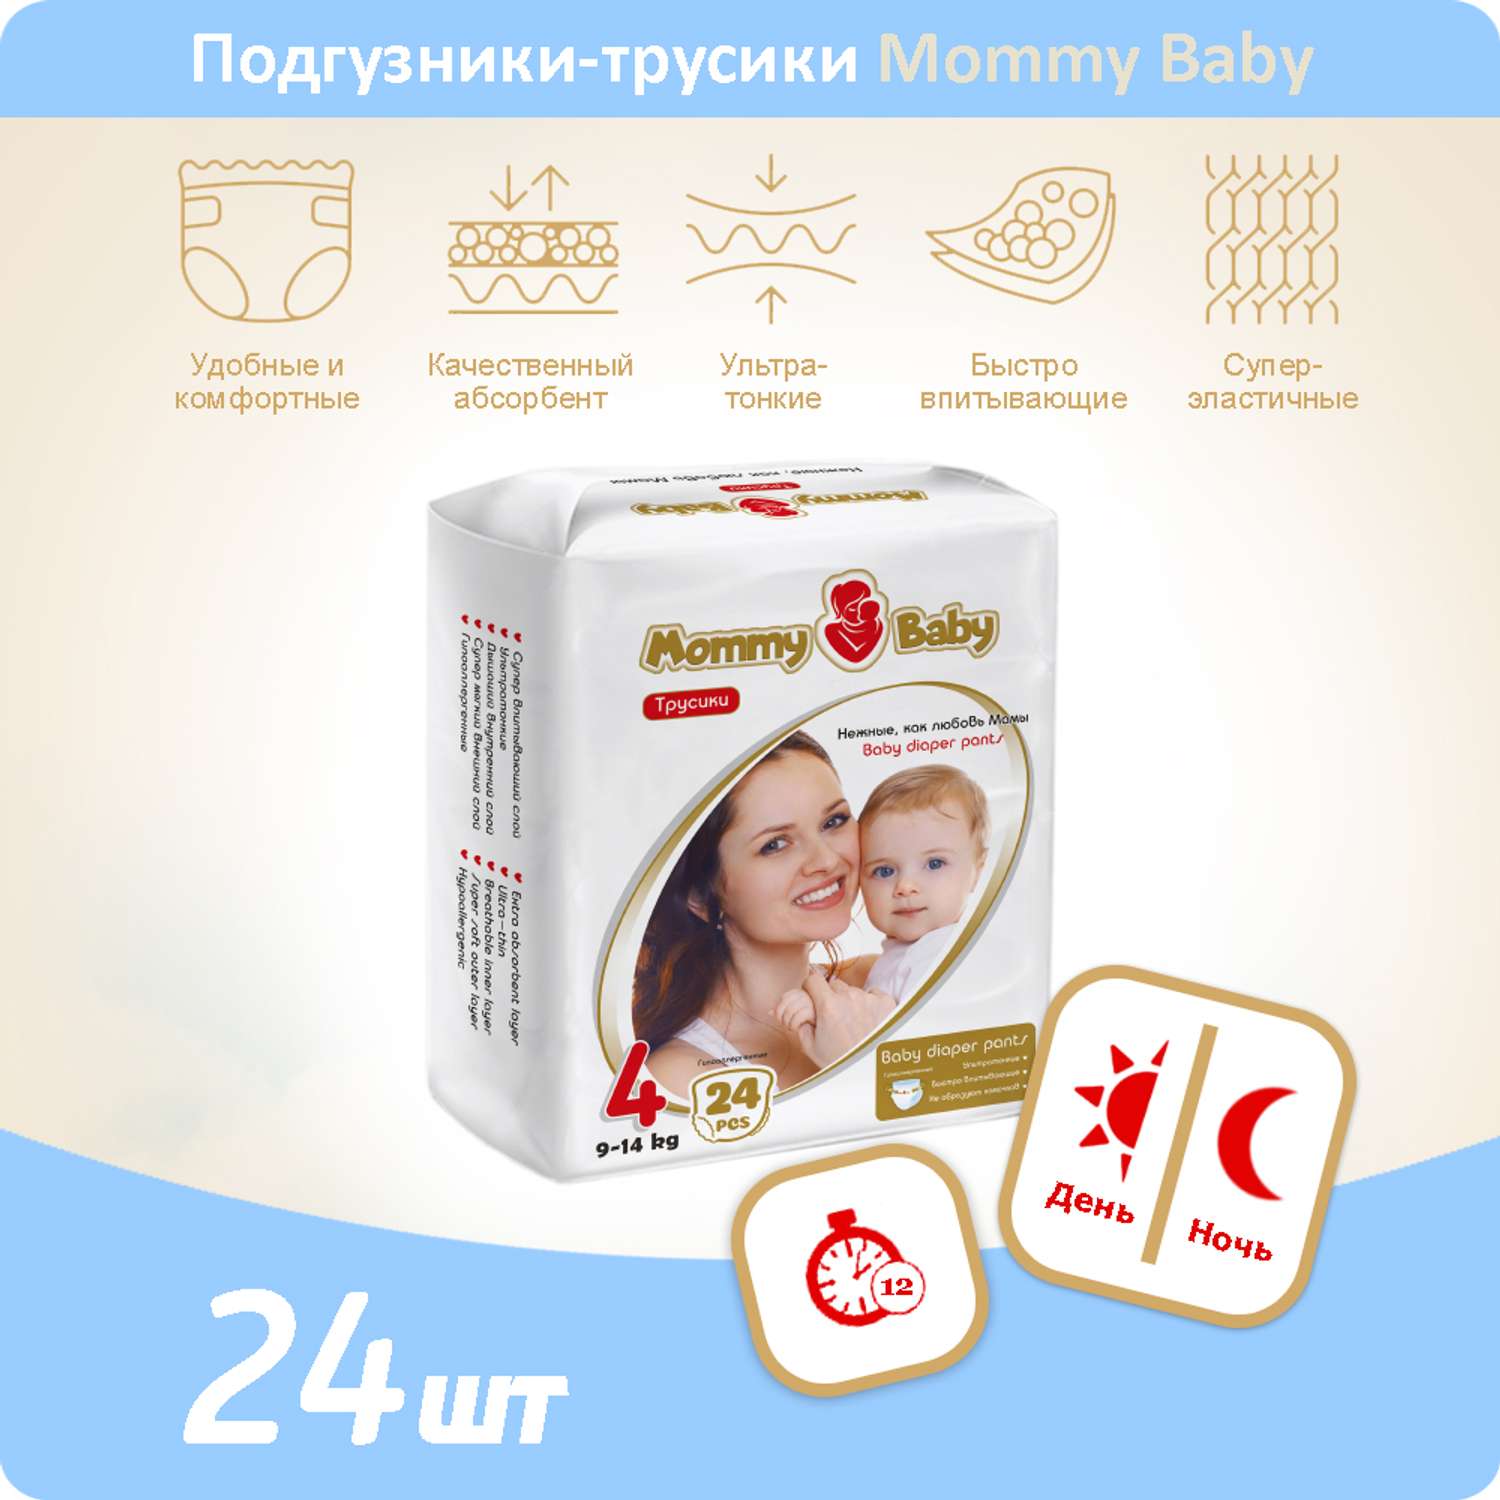 Подгузники-трусики Mommy Baby Размер 4. 24 штуки в упаковке 9-14 кг - фото 1